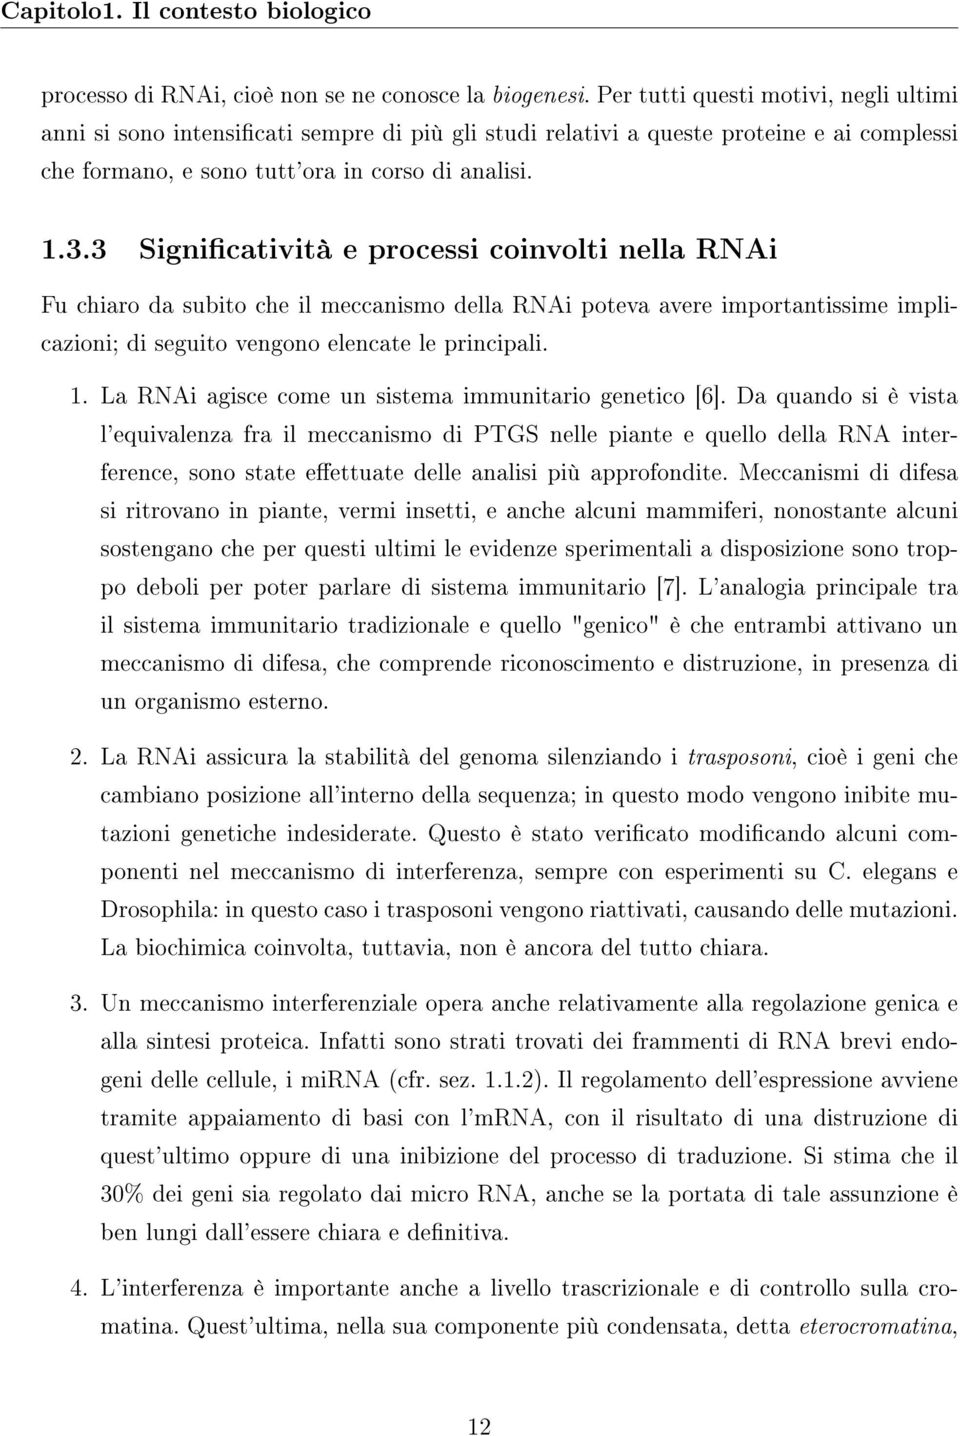 3 Signicatività e processi coinvolti nella RNAi Fu chiaro da subito che il meccanismo della RNAi poteva avere importantissime implicazioni; di seguito vengono elencate le principali. 1.